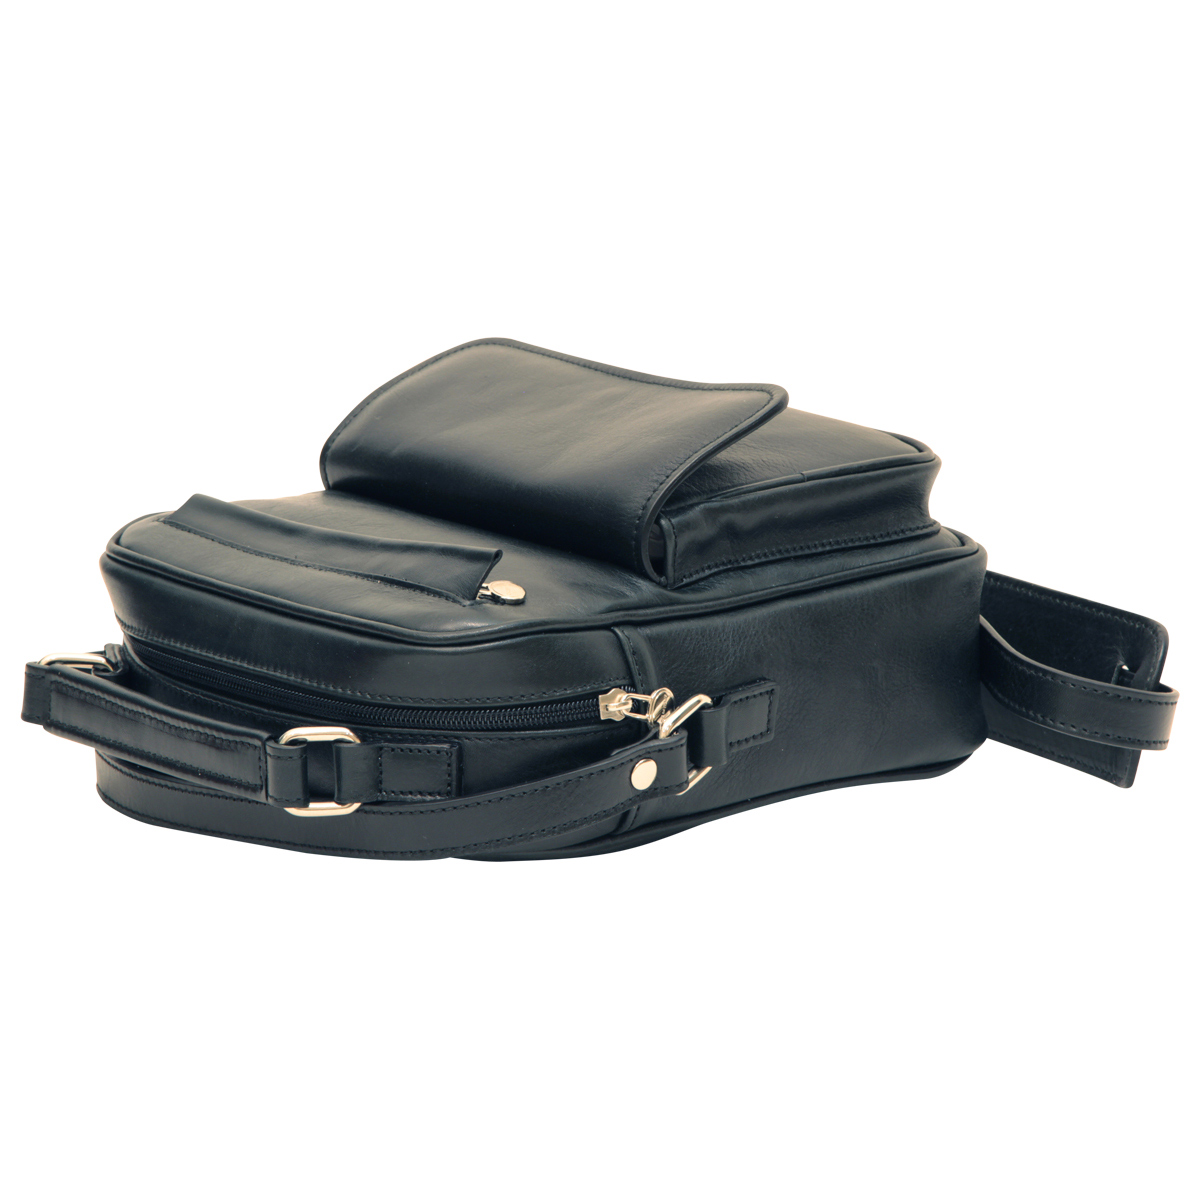 Leather Shoulder Bag with front pocket - Black | 056489NE US | Old Angler Firenze